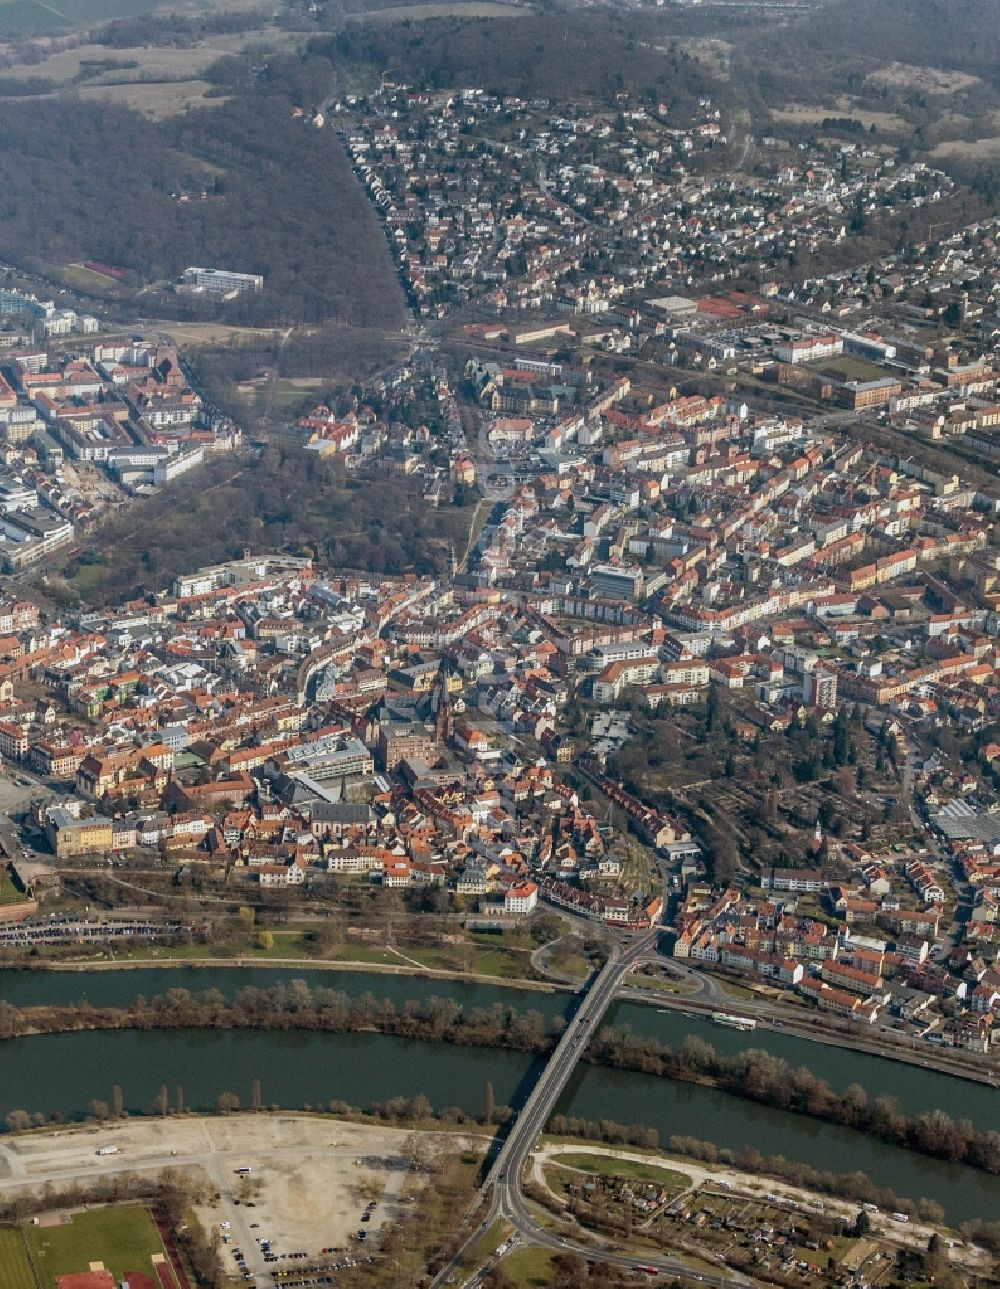 Luftbild Aschaffenburg - Innenstadt von Aschaffenburg im Bundesland Bayern